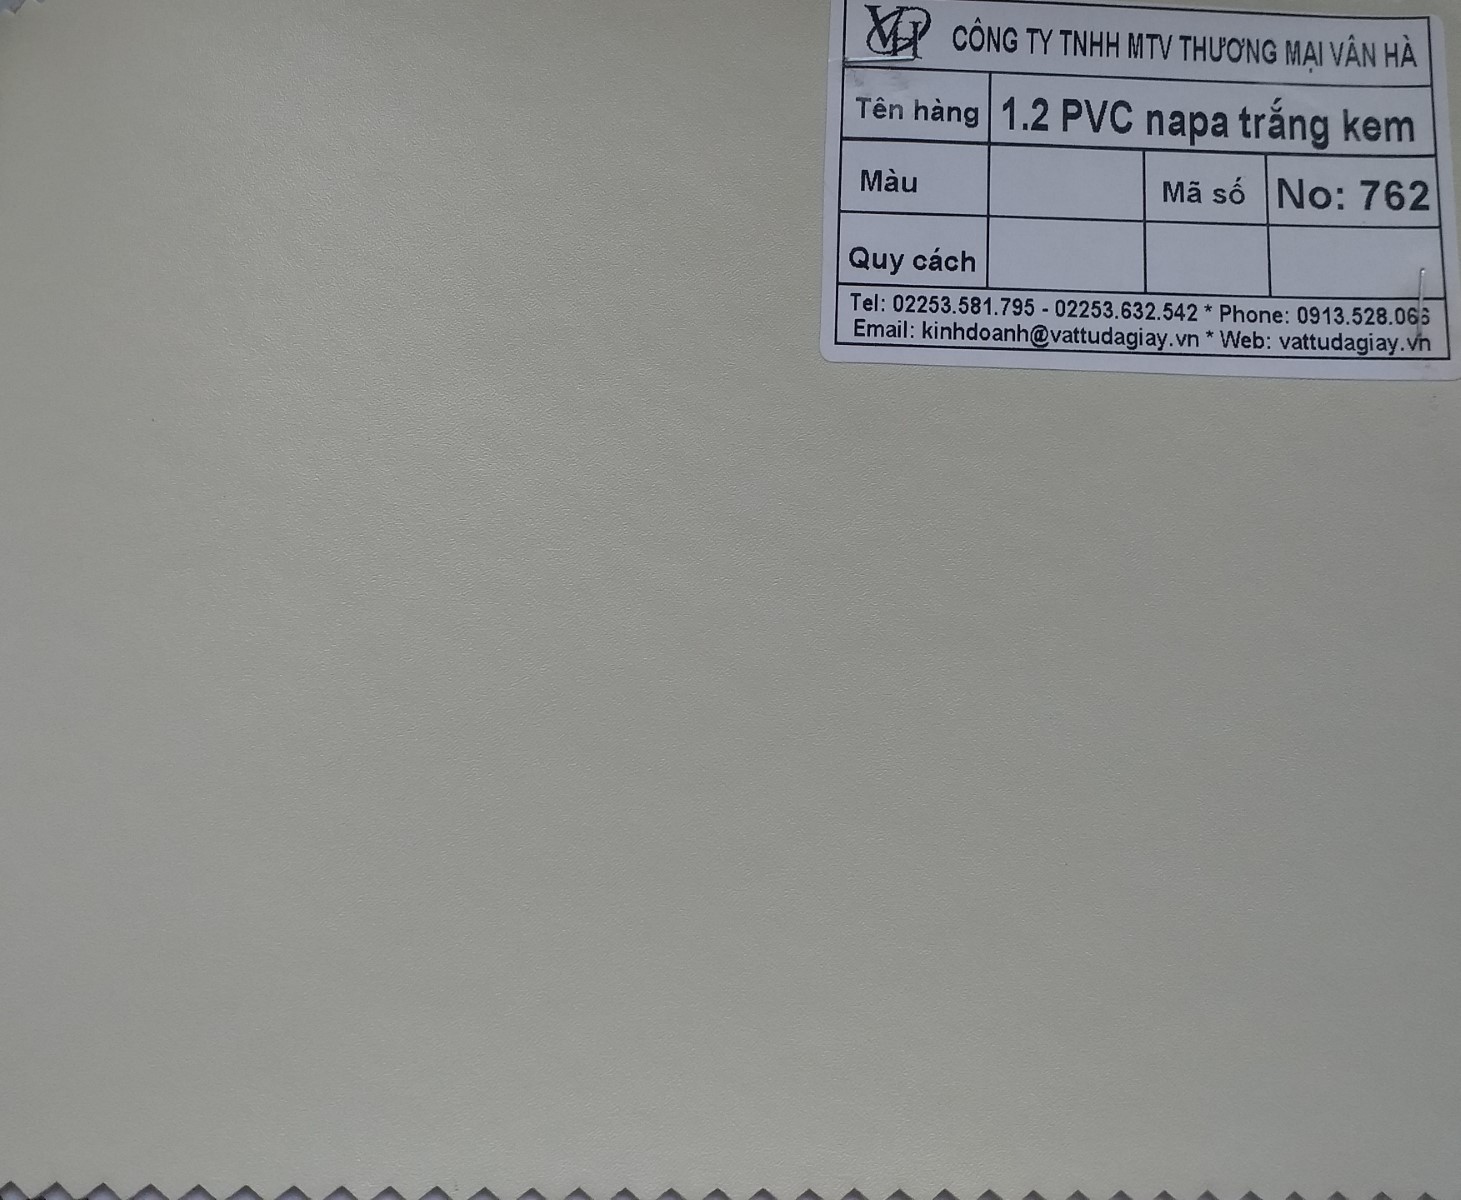 12 pvc napa trắng kem mã 762 - 1.2 PVC napa trắng kem mã 762